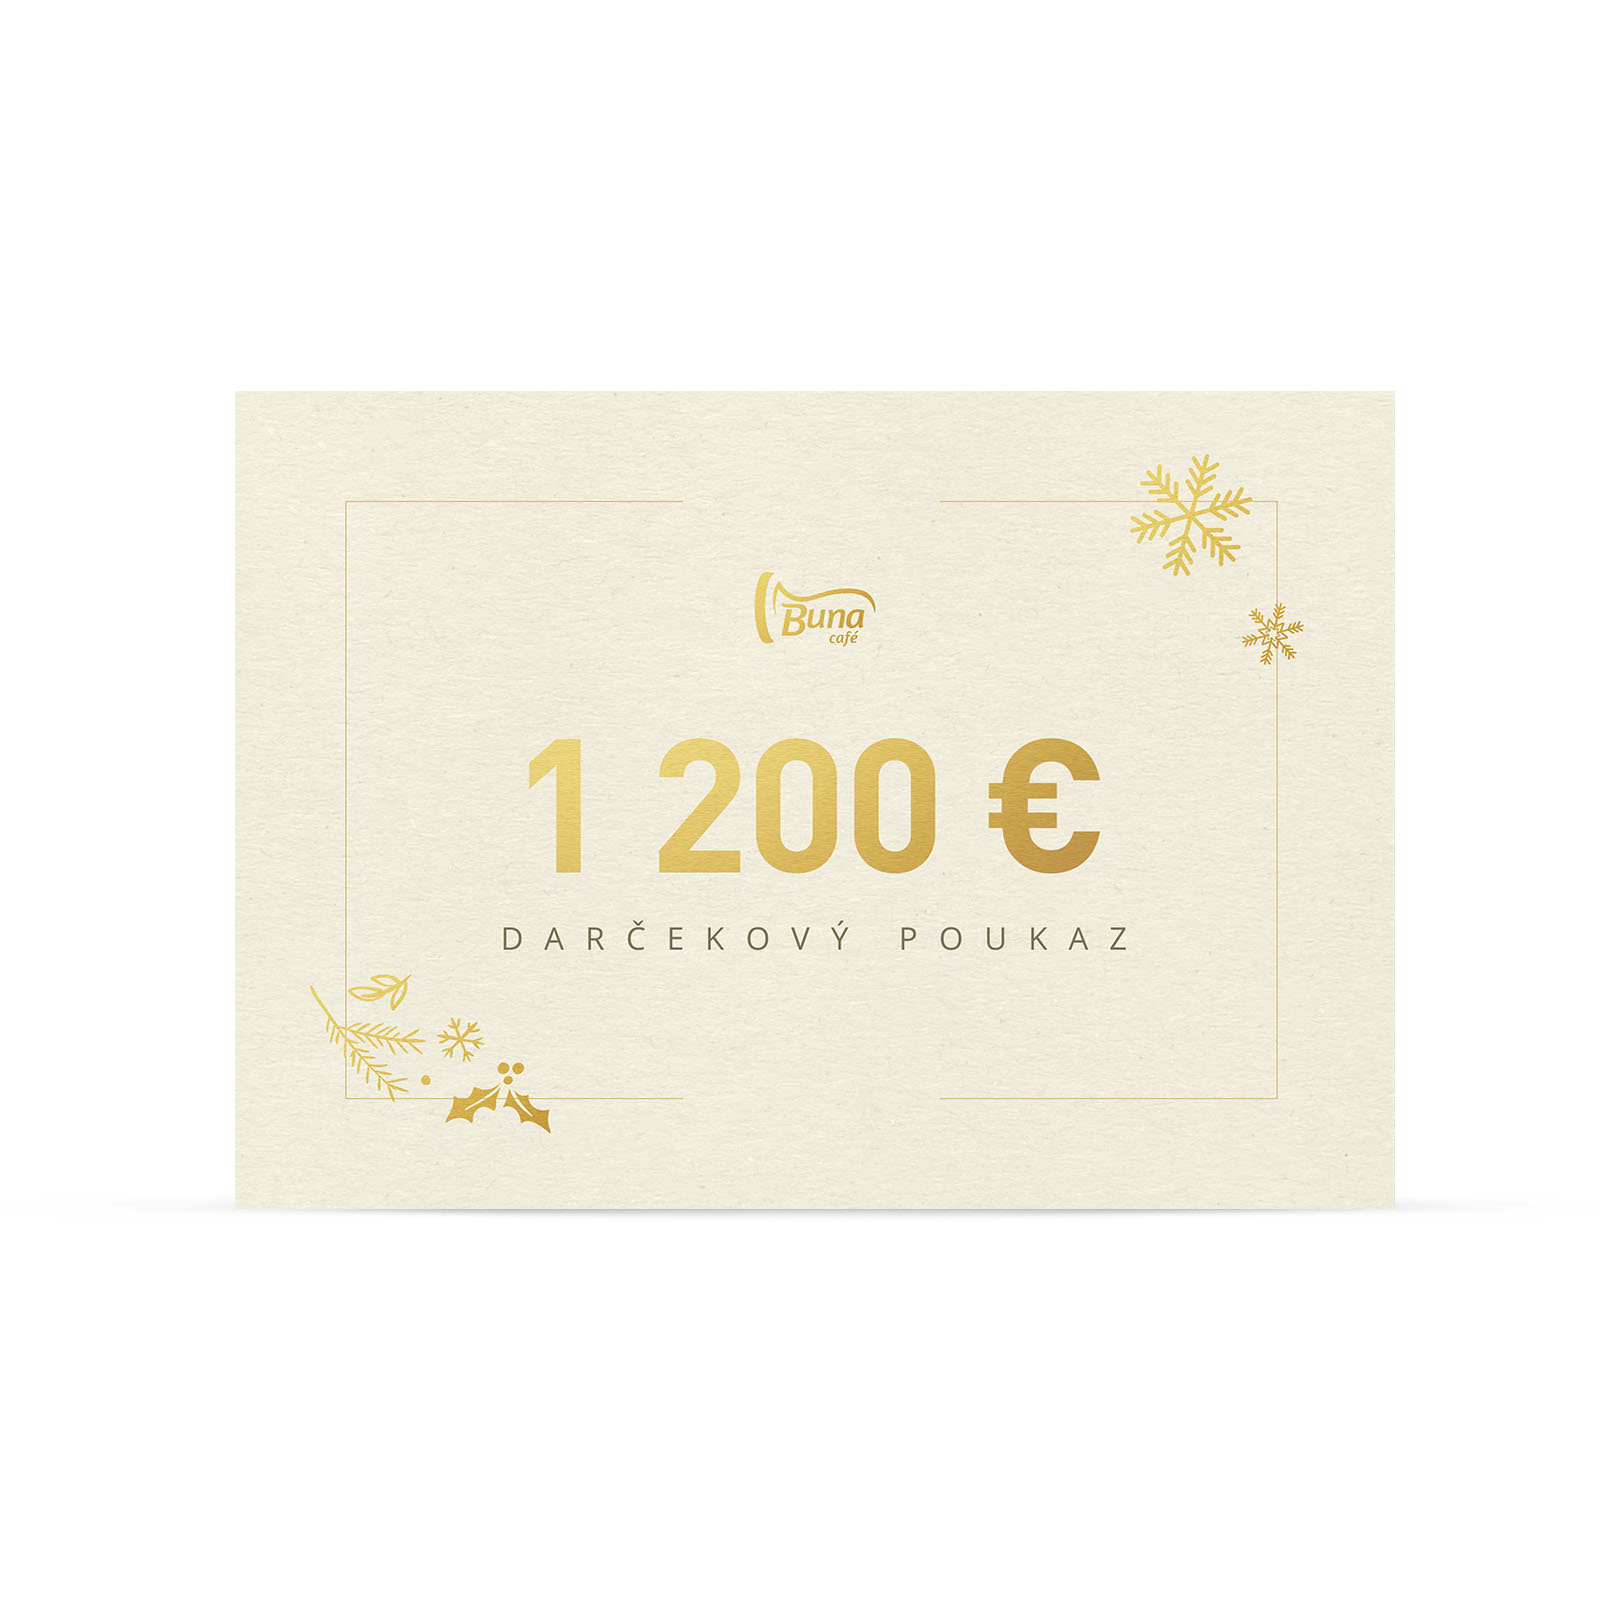 Buna café darčekový poukaz v hodnote 1 200 €